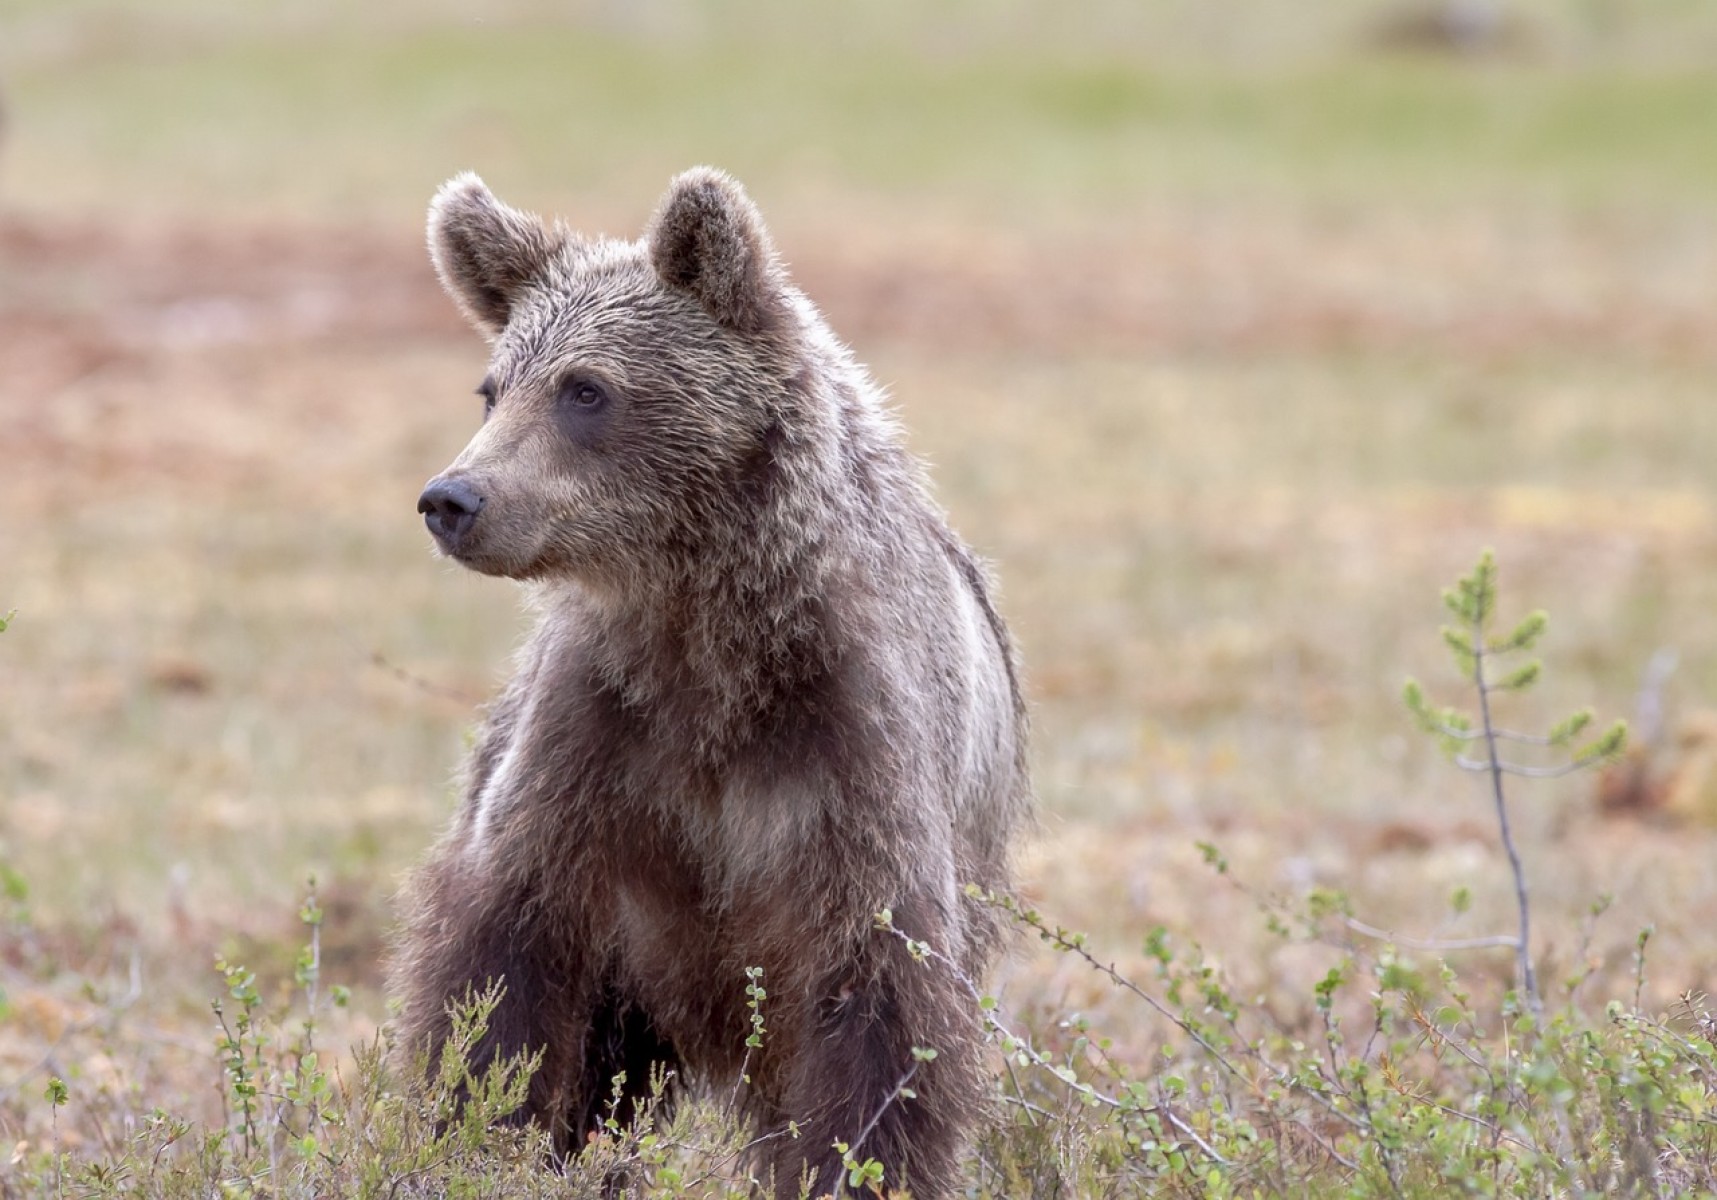 Emberre támadt a medve Szovátán